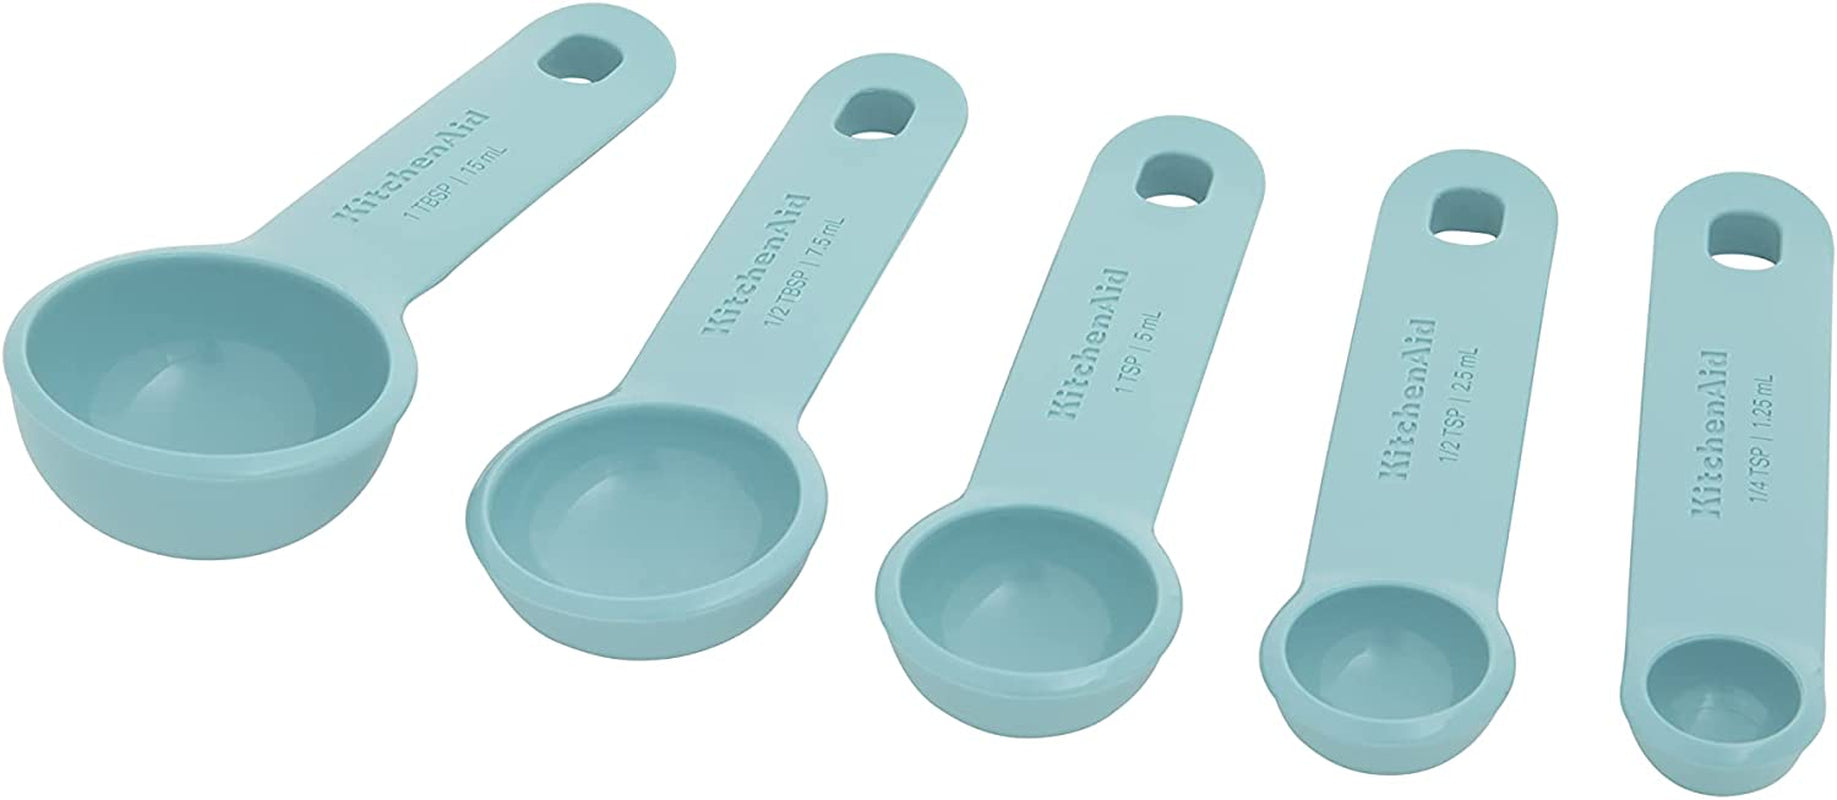 KitchenAid Aqua Sky Measuring Spoons Set of 5, Aqua Sky